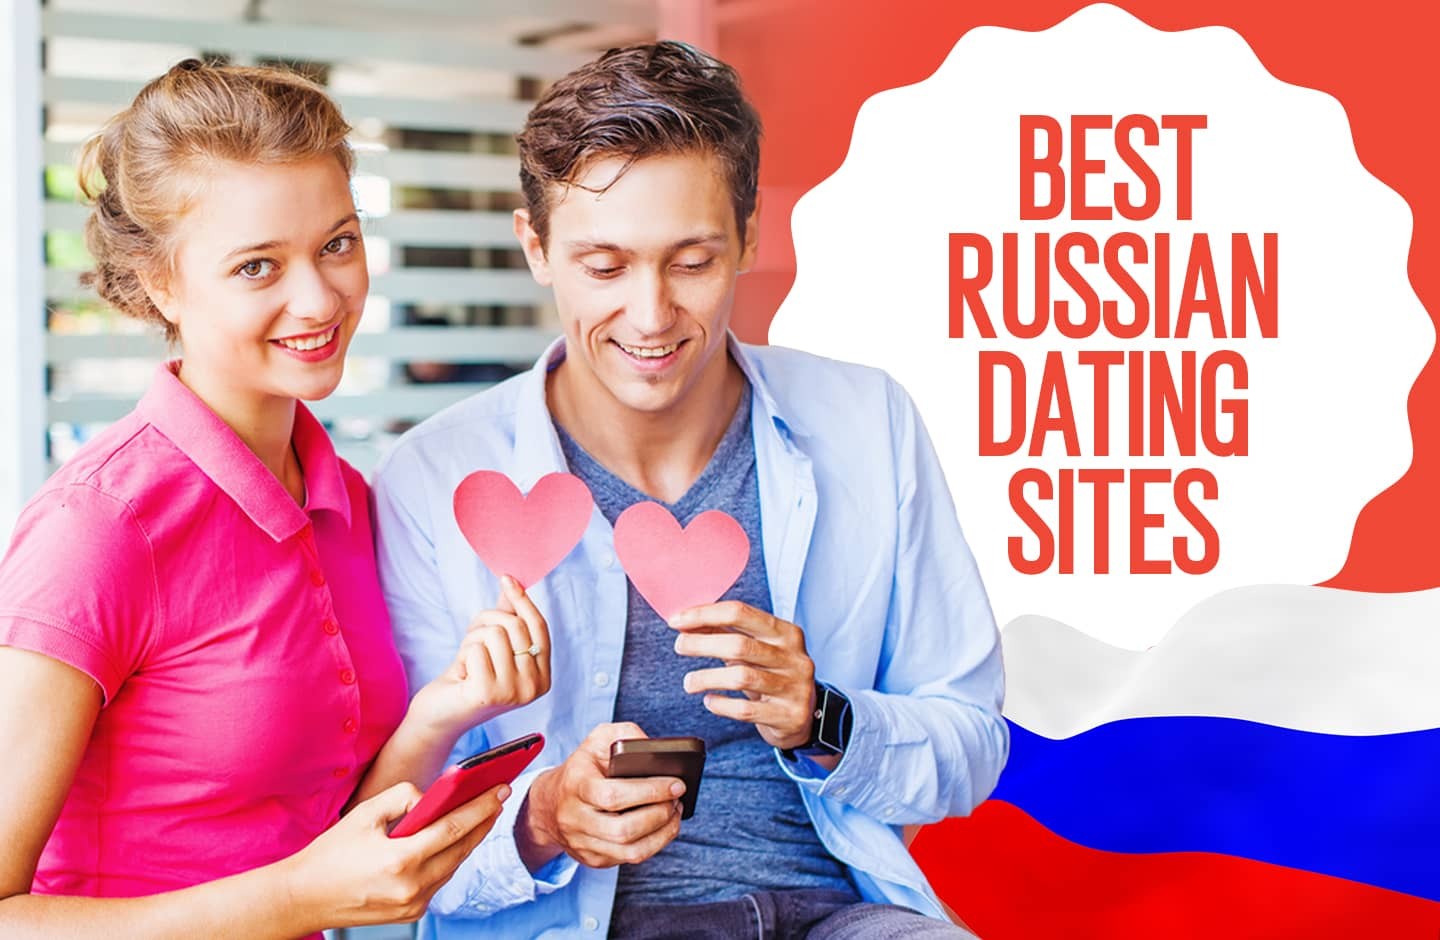 Russian dating website in Porto Alegre